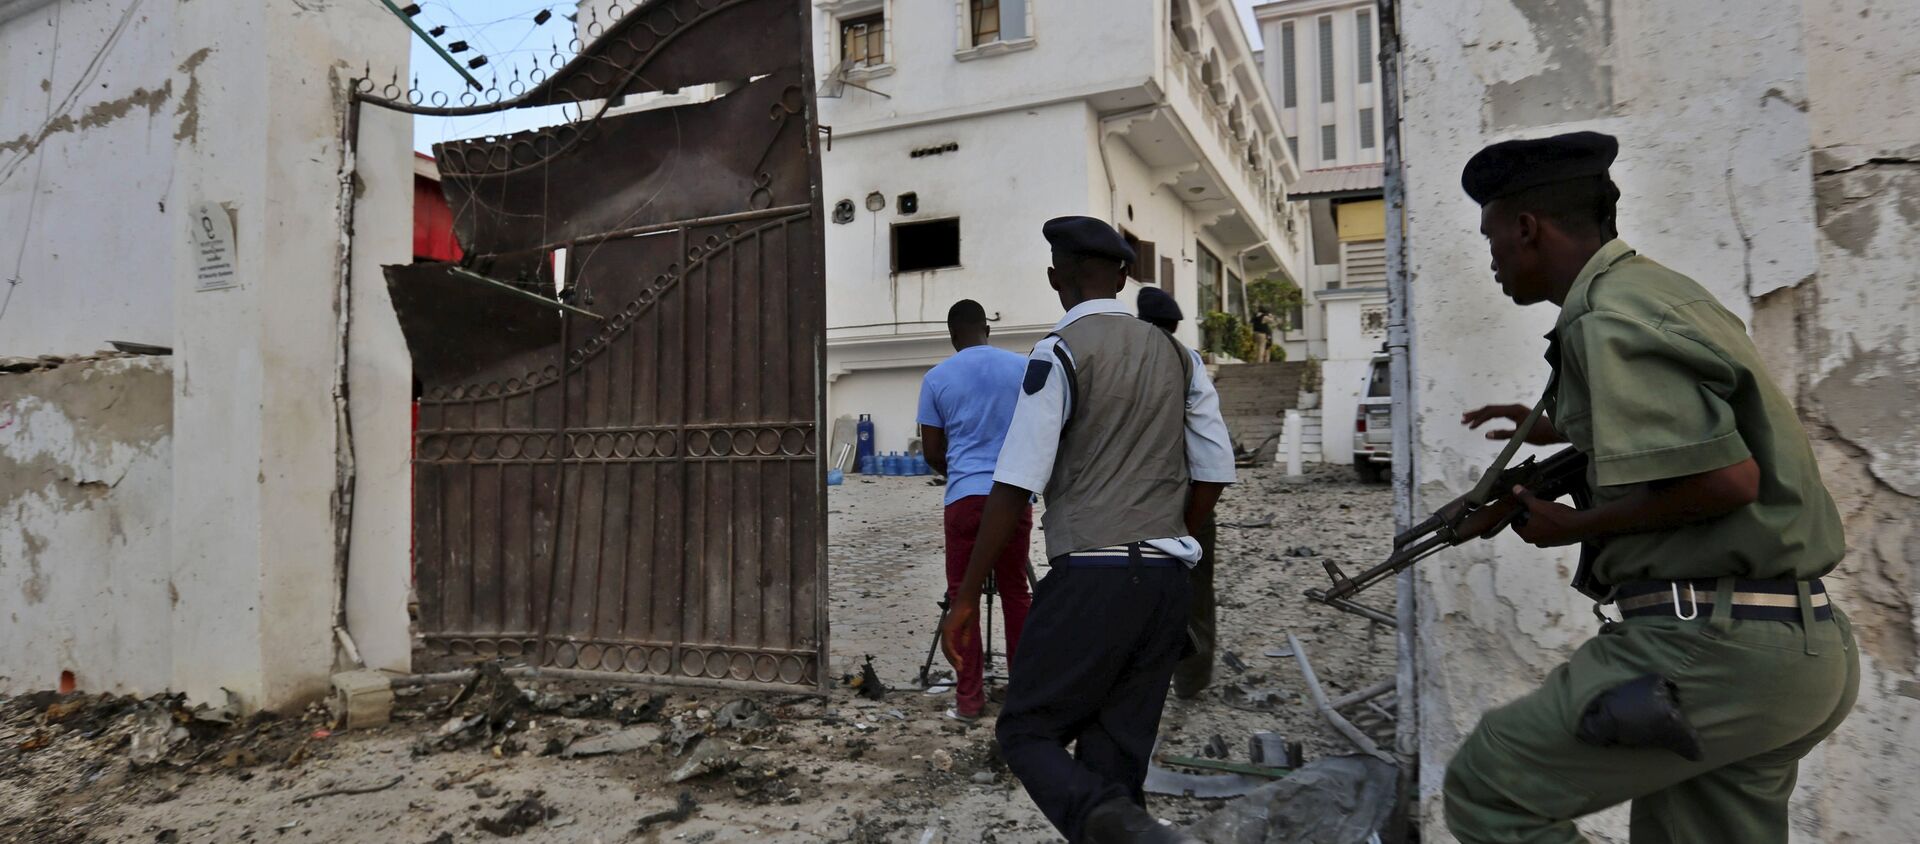 الشرطة الصومالية بعد حادث ارهابي لحركة الشباب في مارس الماضي - سبوتنيك عربي, 1920, 12.04.2021